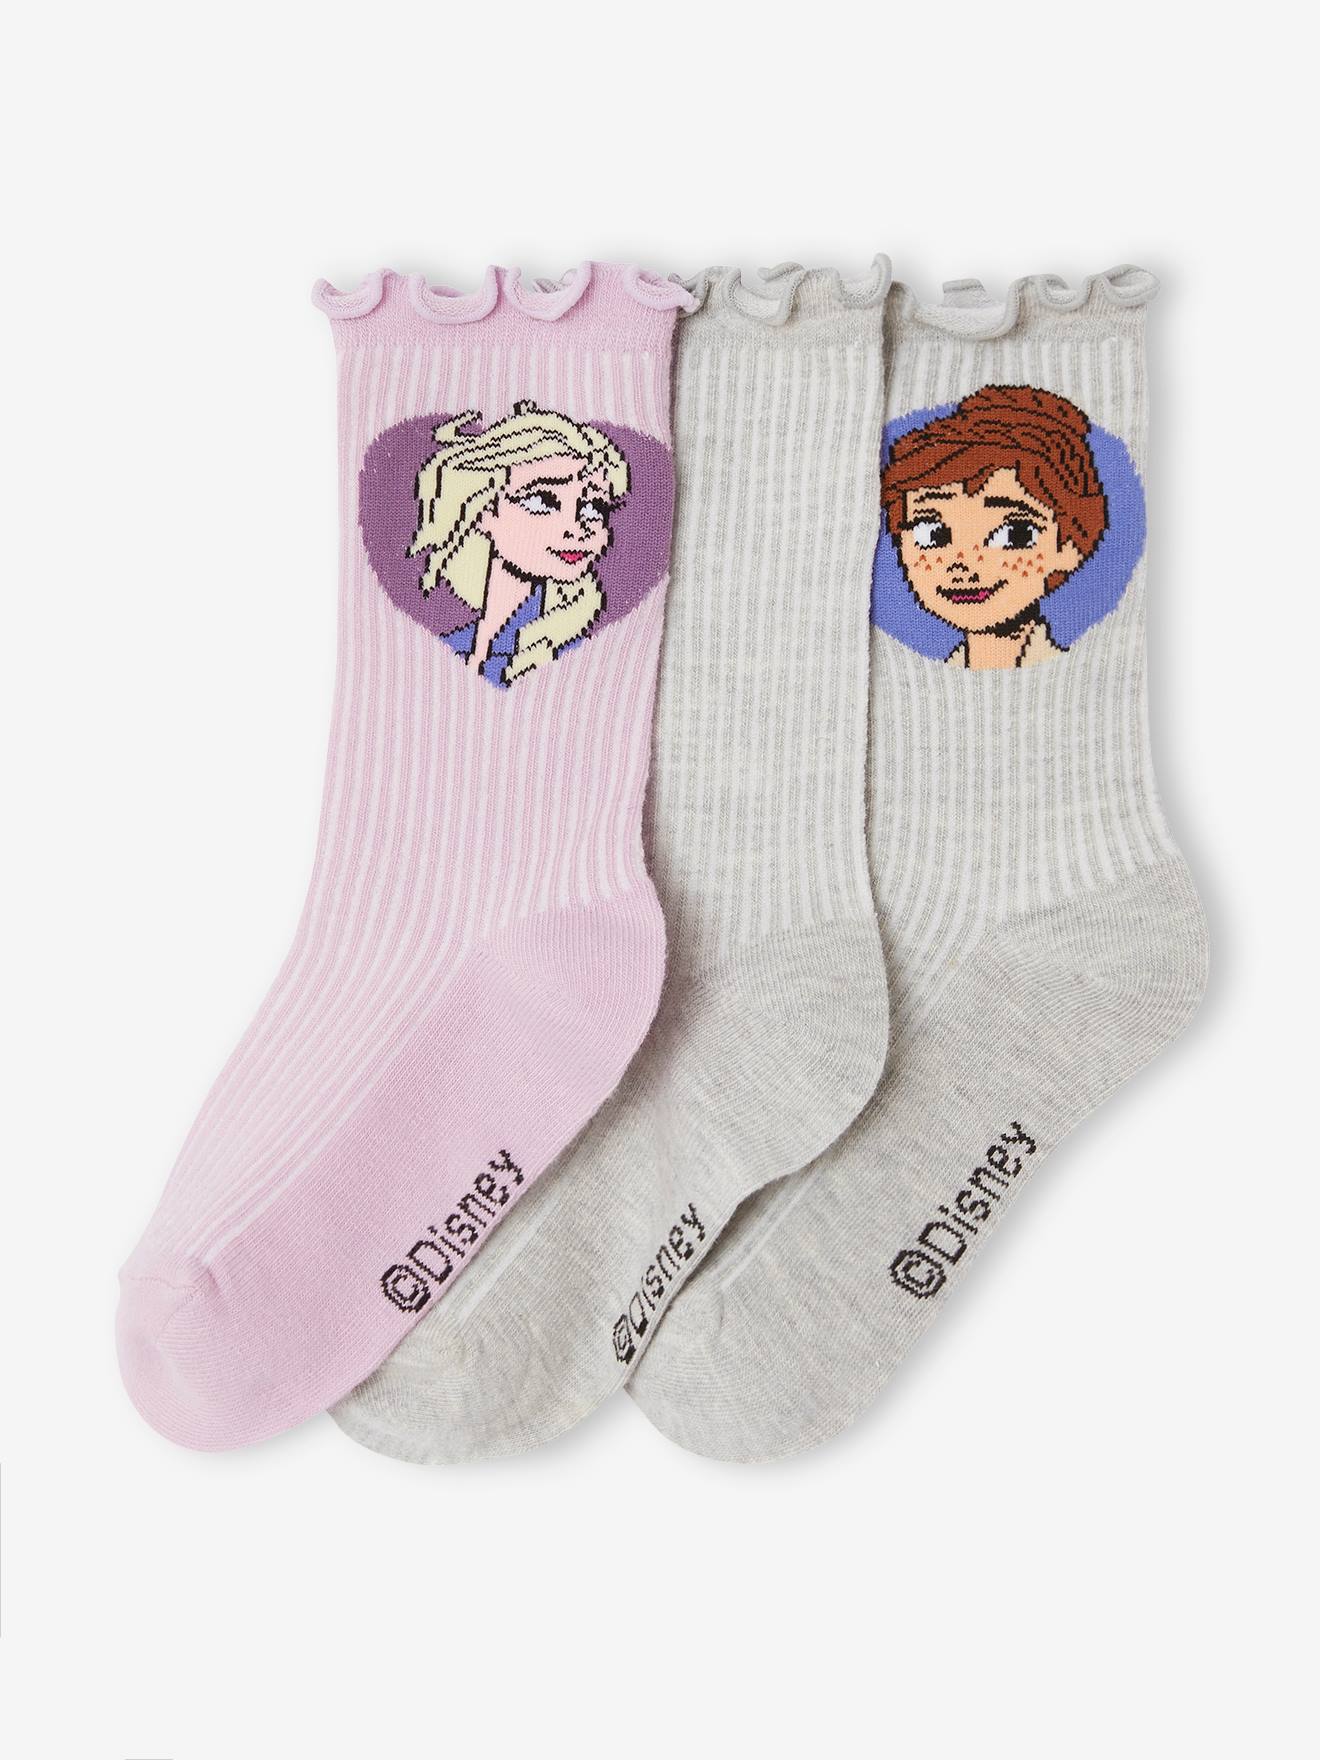 Pack de 3 calcetines de Frozen para niñas en lila y blanco